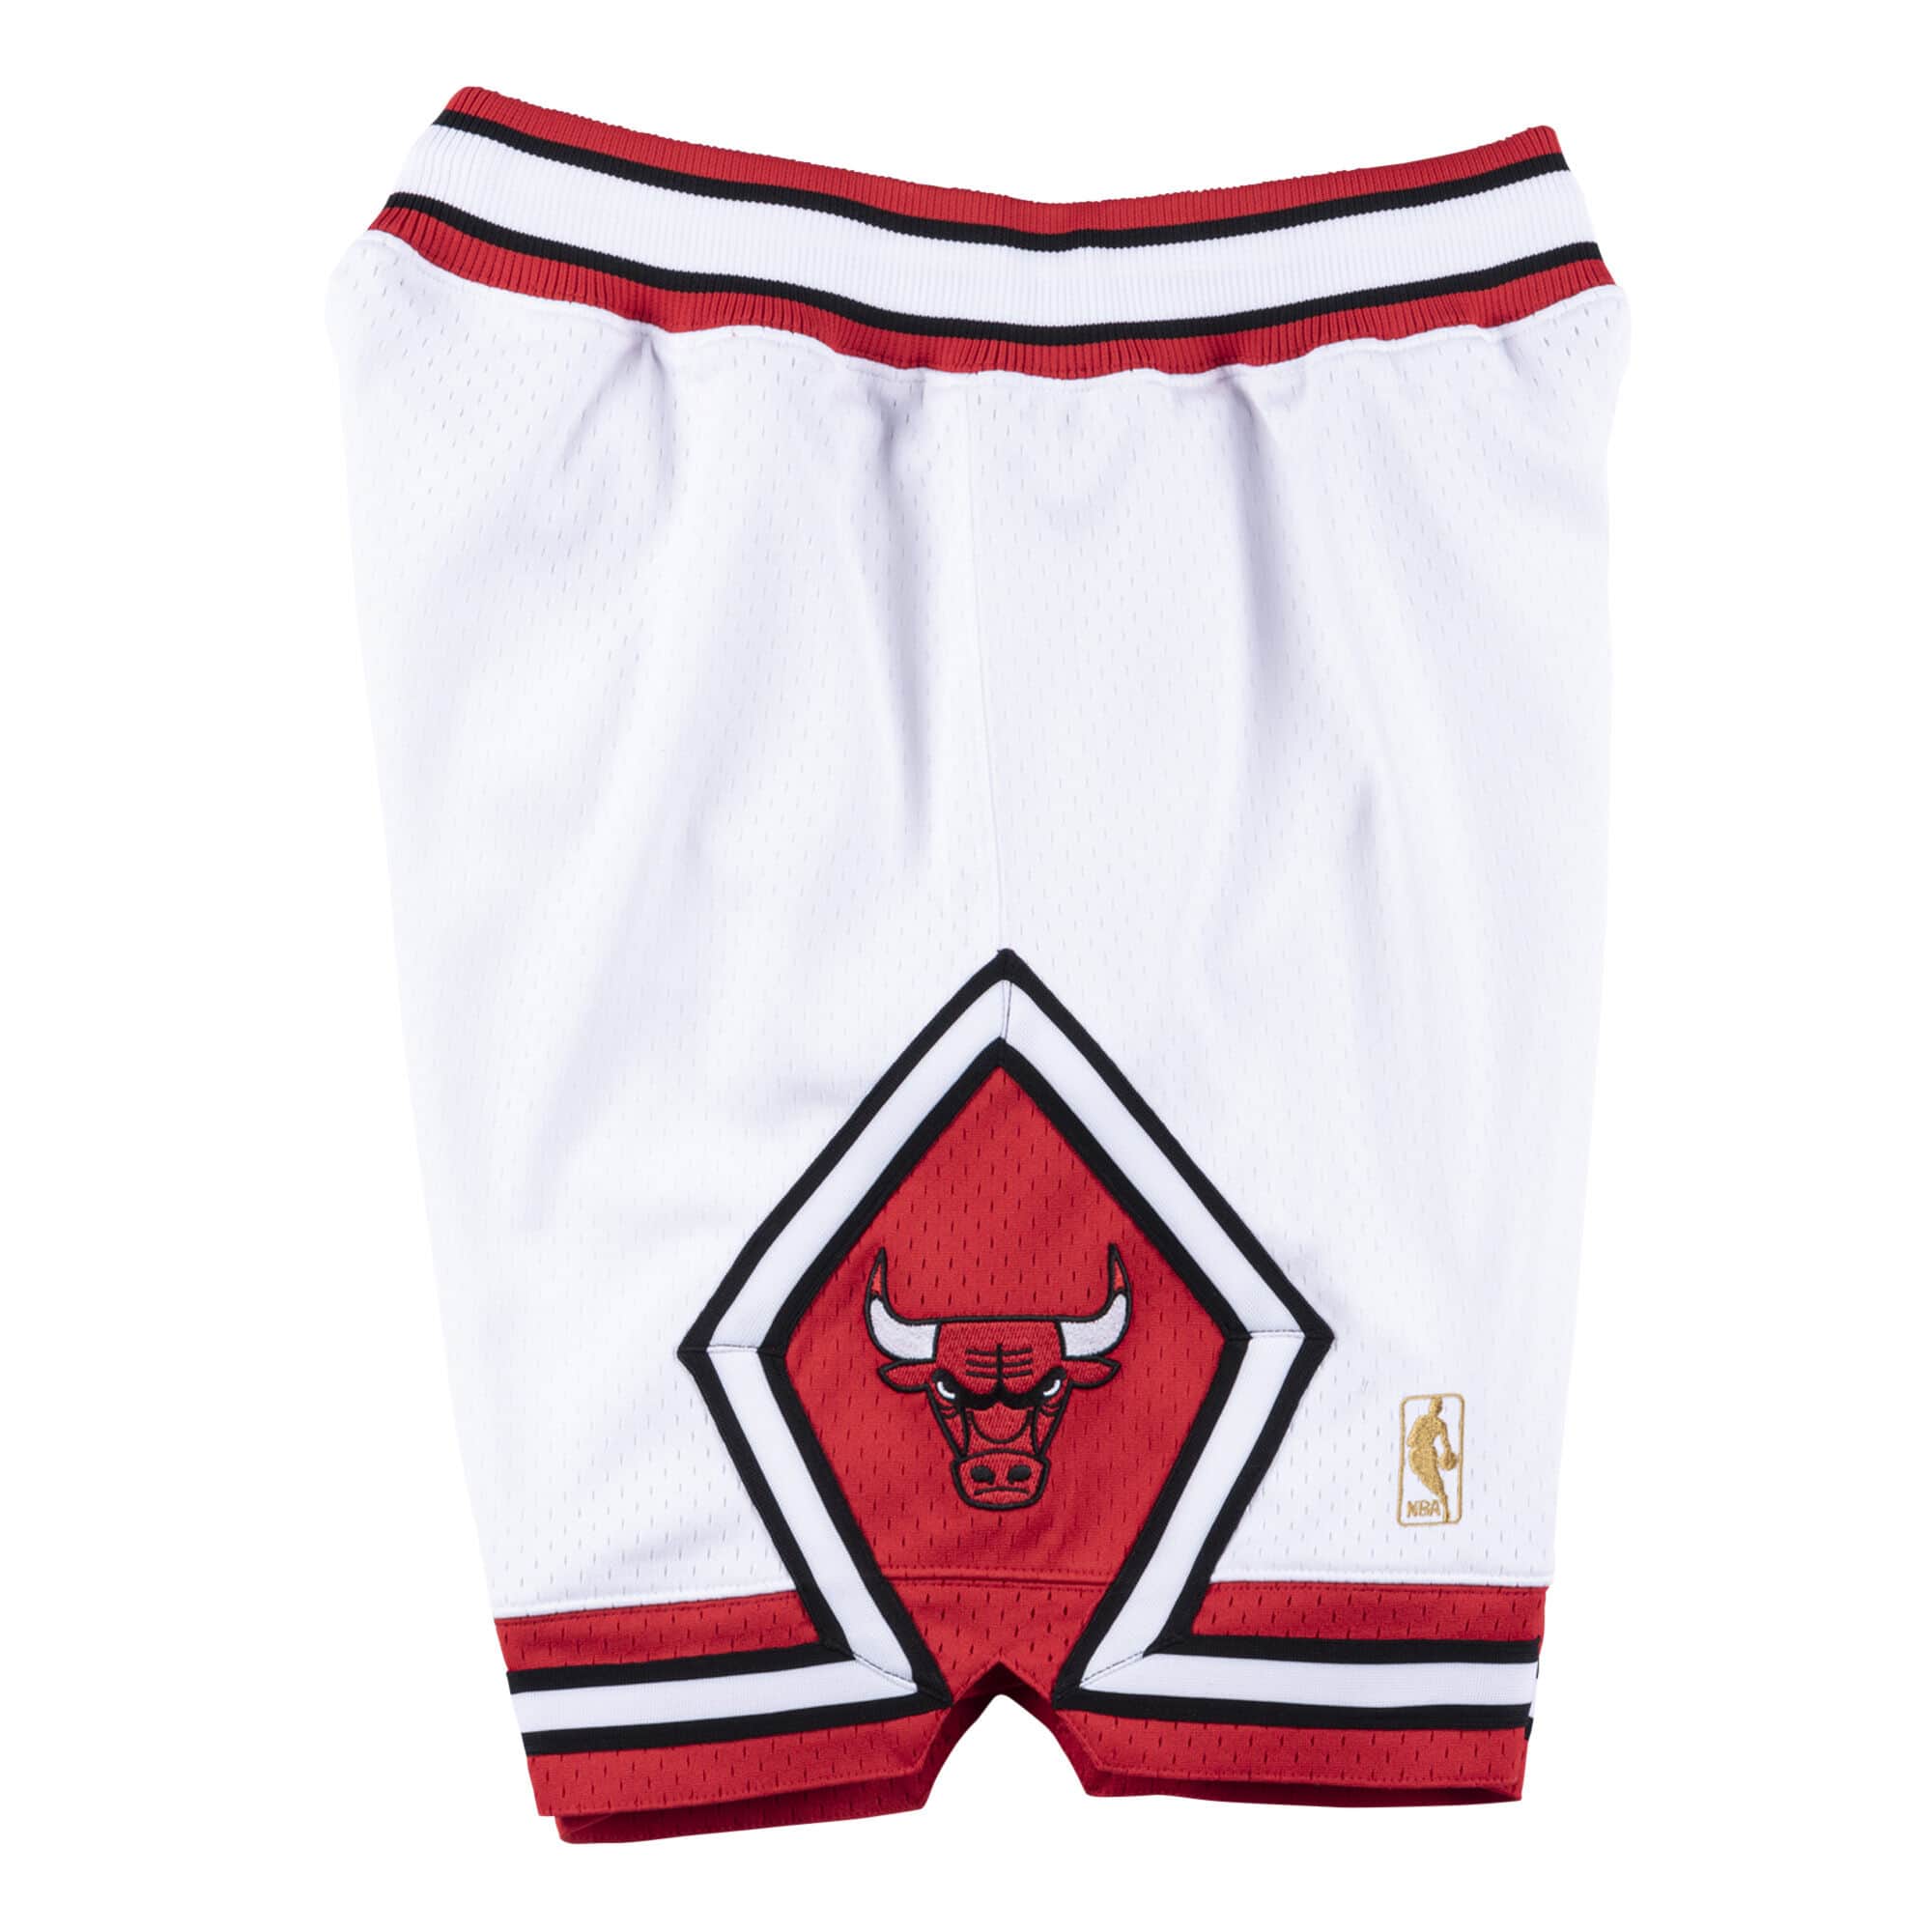 bulls chicago shorts